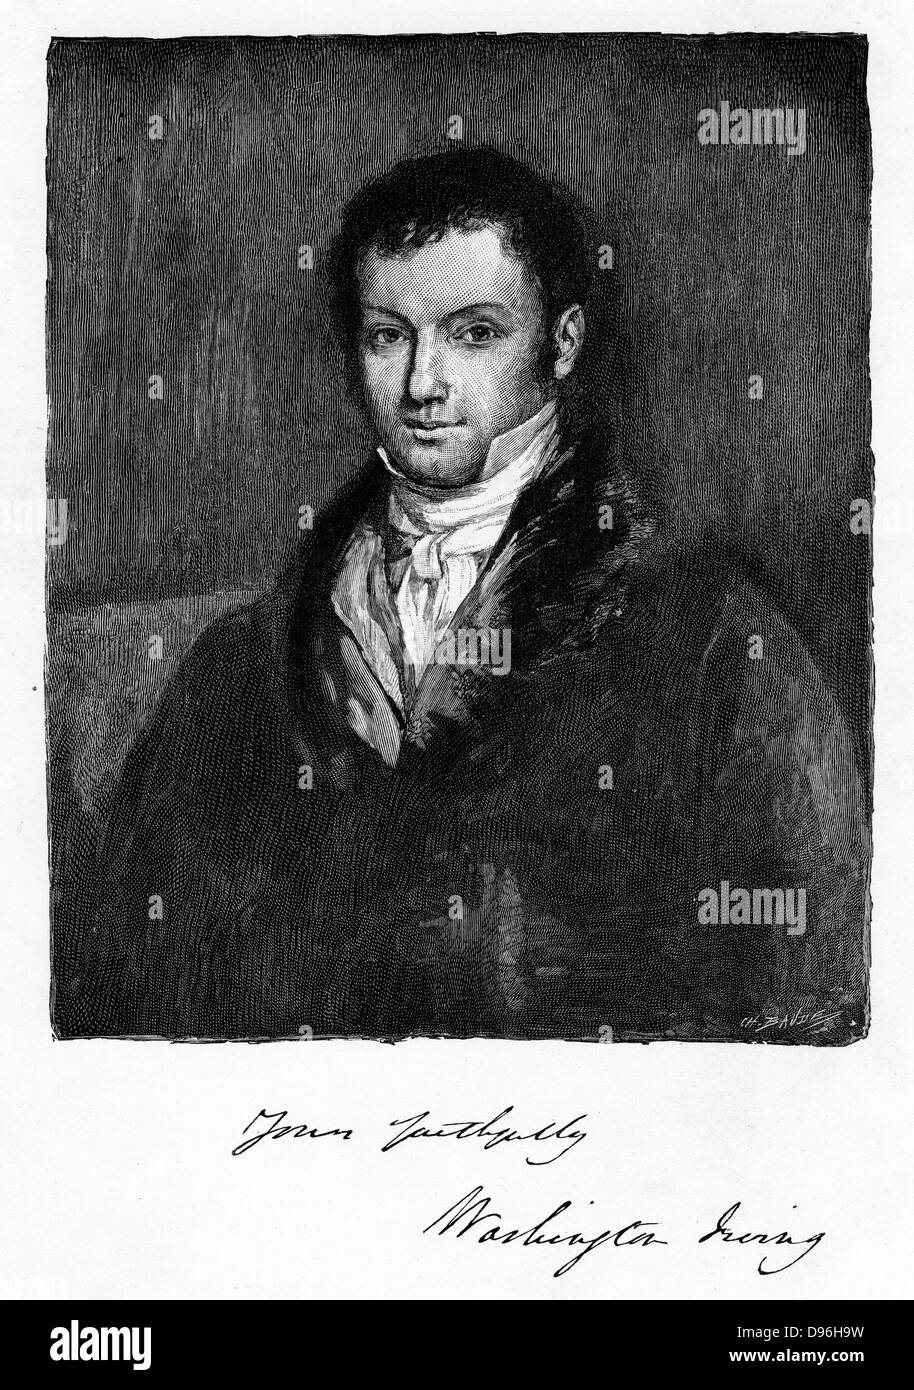 Washington Irving (1782-1859) amerikanischer Mann von Buchstaben, c 1880. Autor von "Rip Van Winkle" und "Die Legende von Sleepy Hollow" (1819-1820). Stockfoto